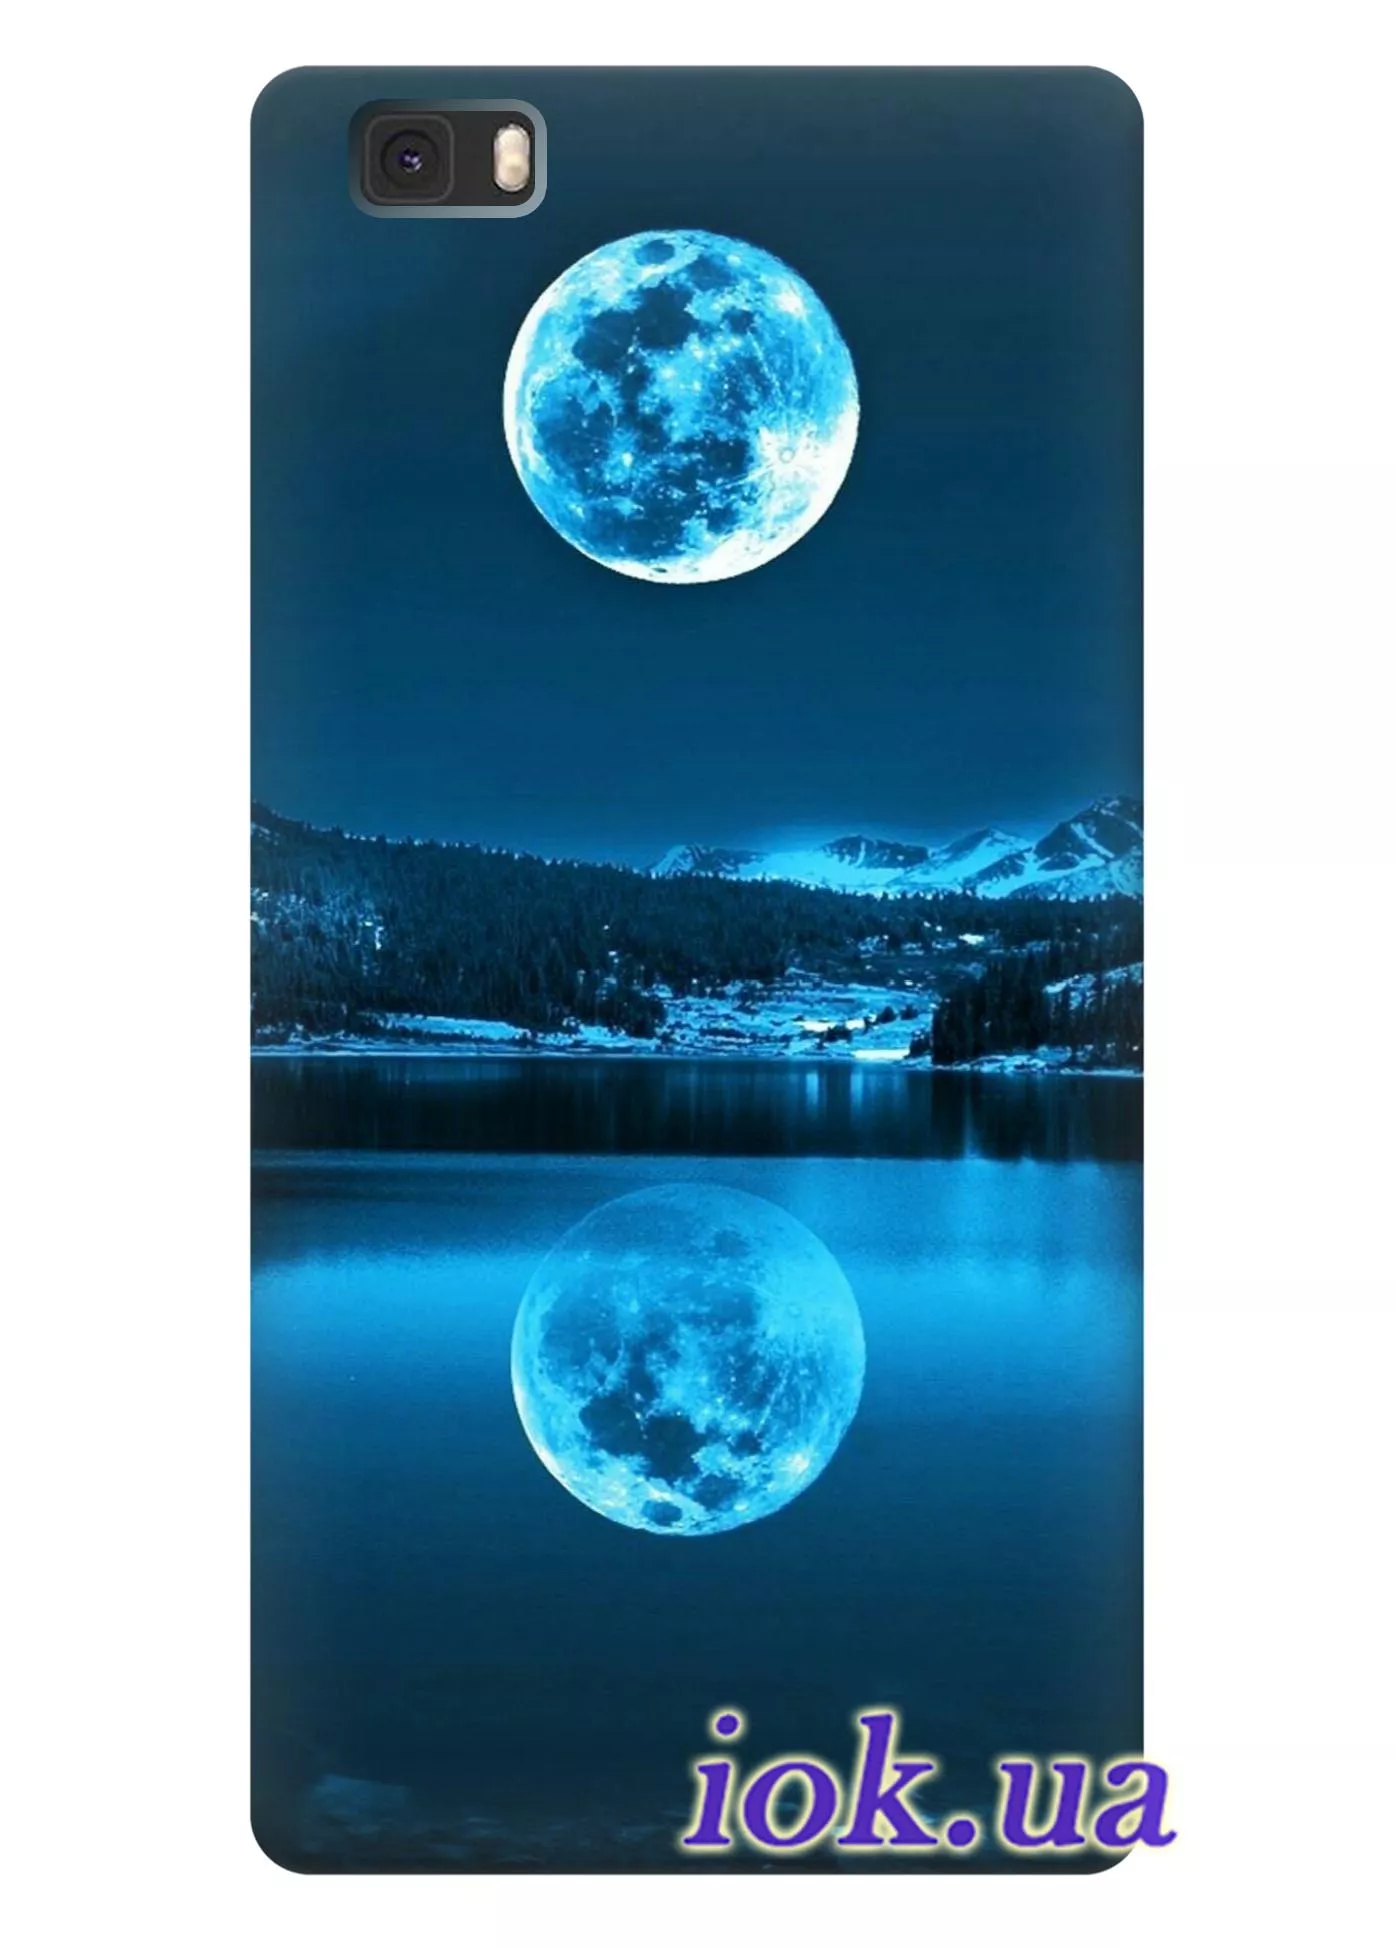 Чехол для Huawei P8 Lite - Сказочная ночь